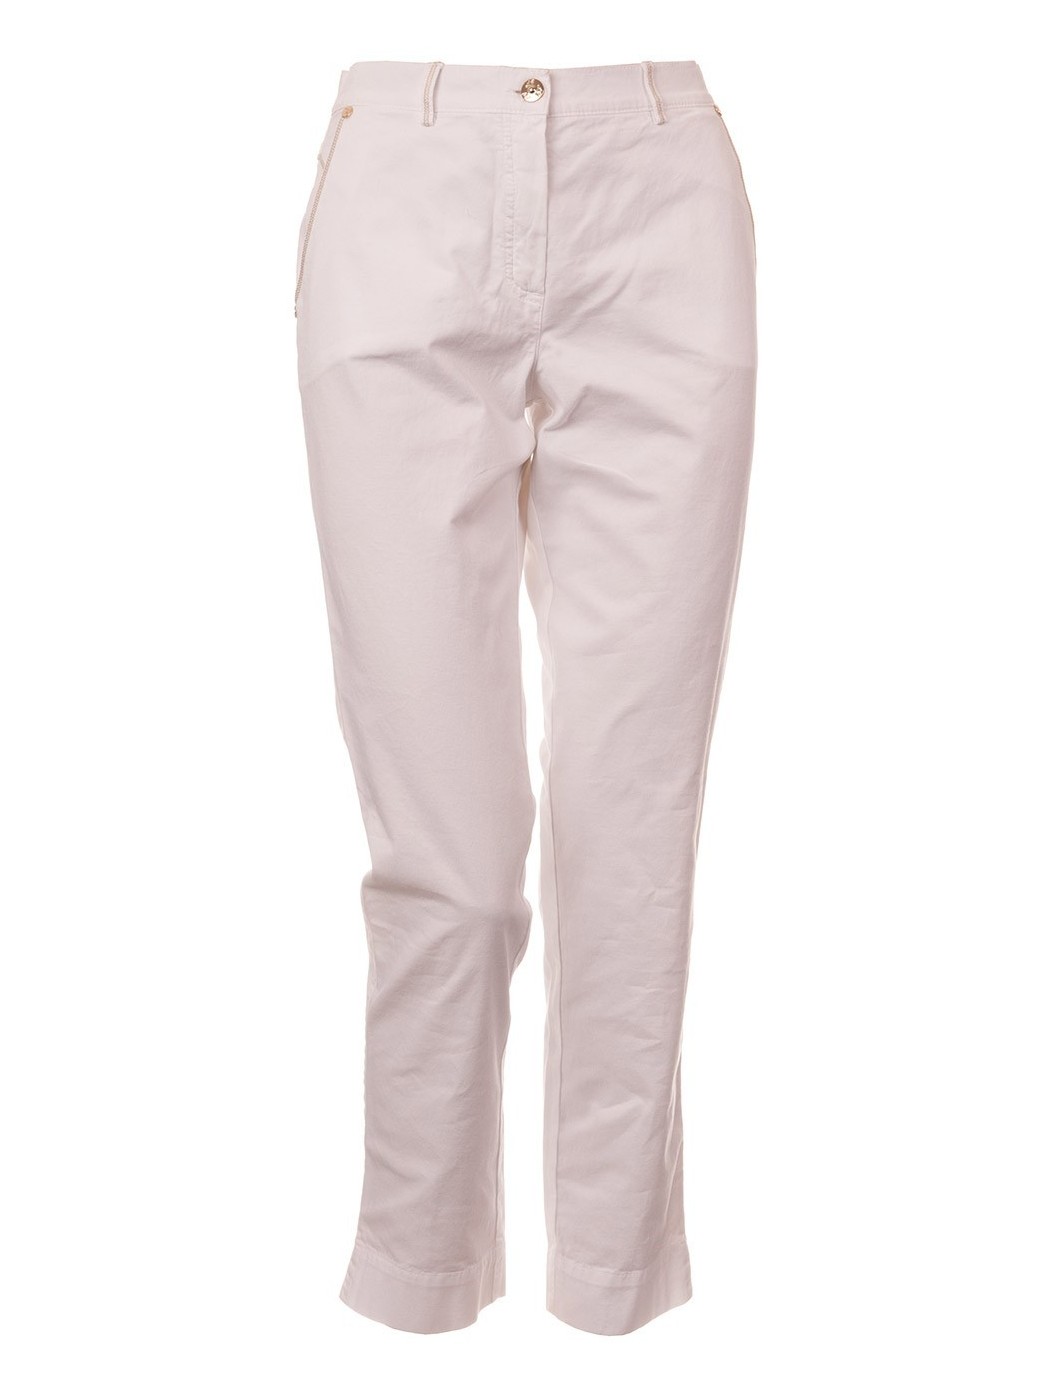 Spodnie Capri Pucci białe